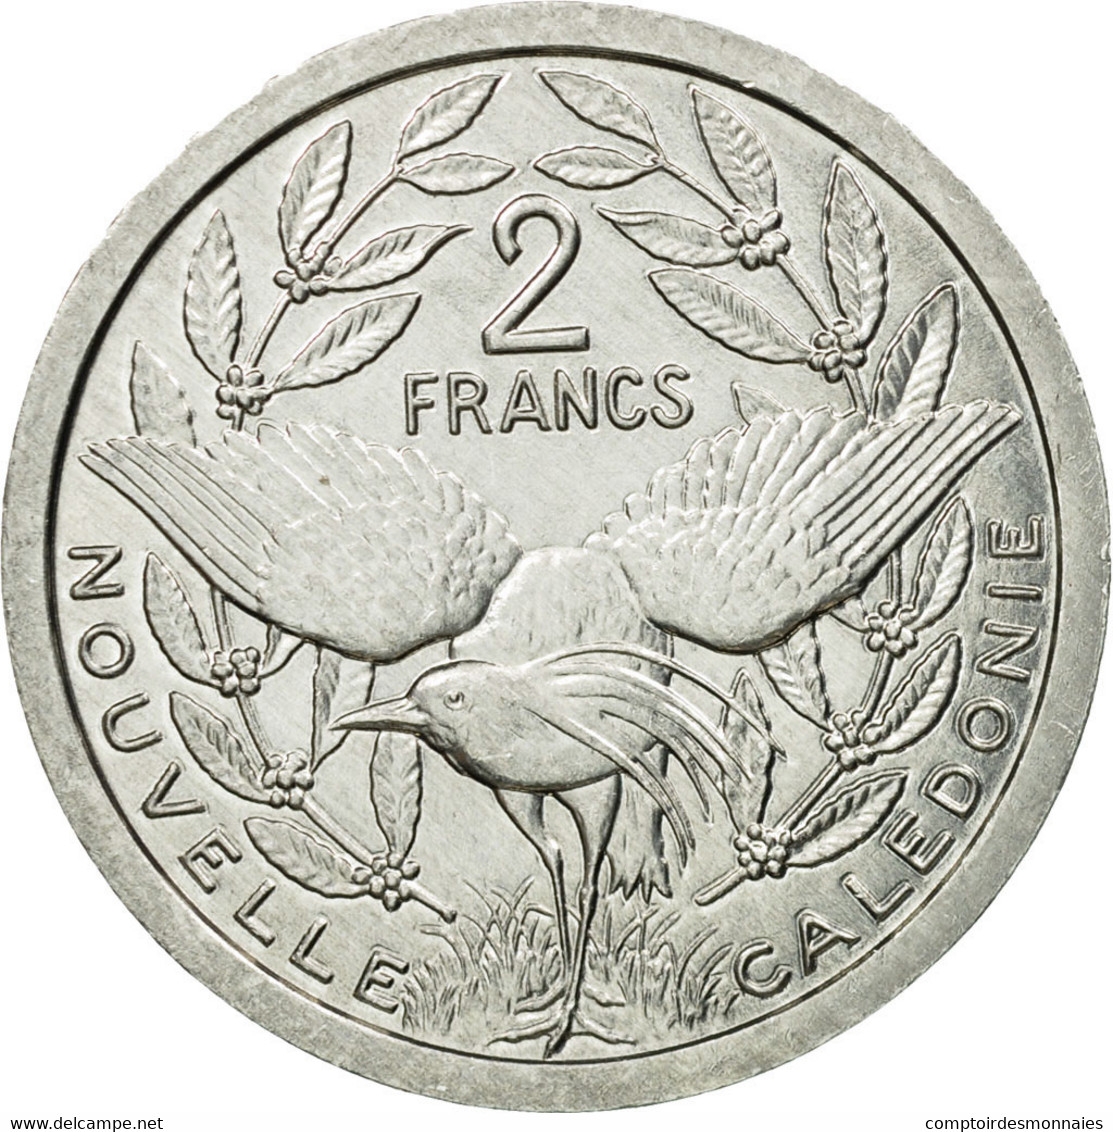 Monnaie, Nouvelle-Calédonie, 2 Francs, 1995, Paris, TTB, Aluminium, KM:14 - Nouvelle-Calédonie